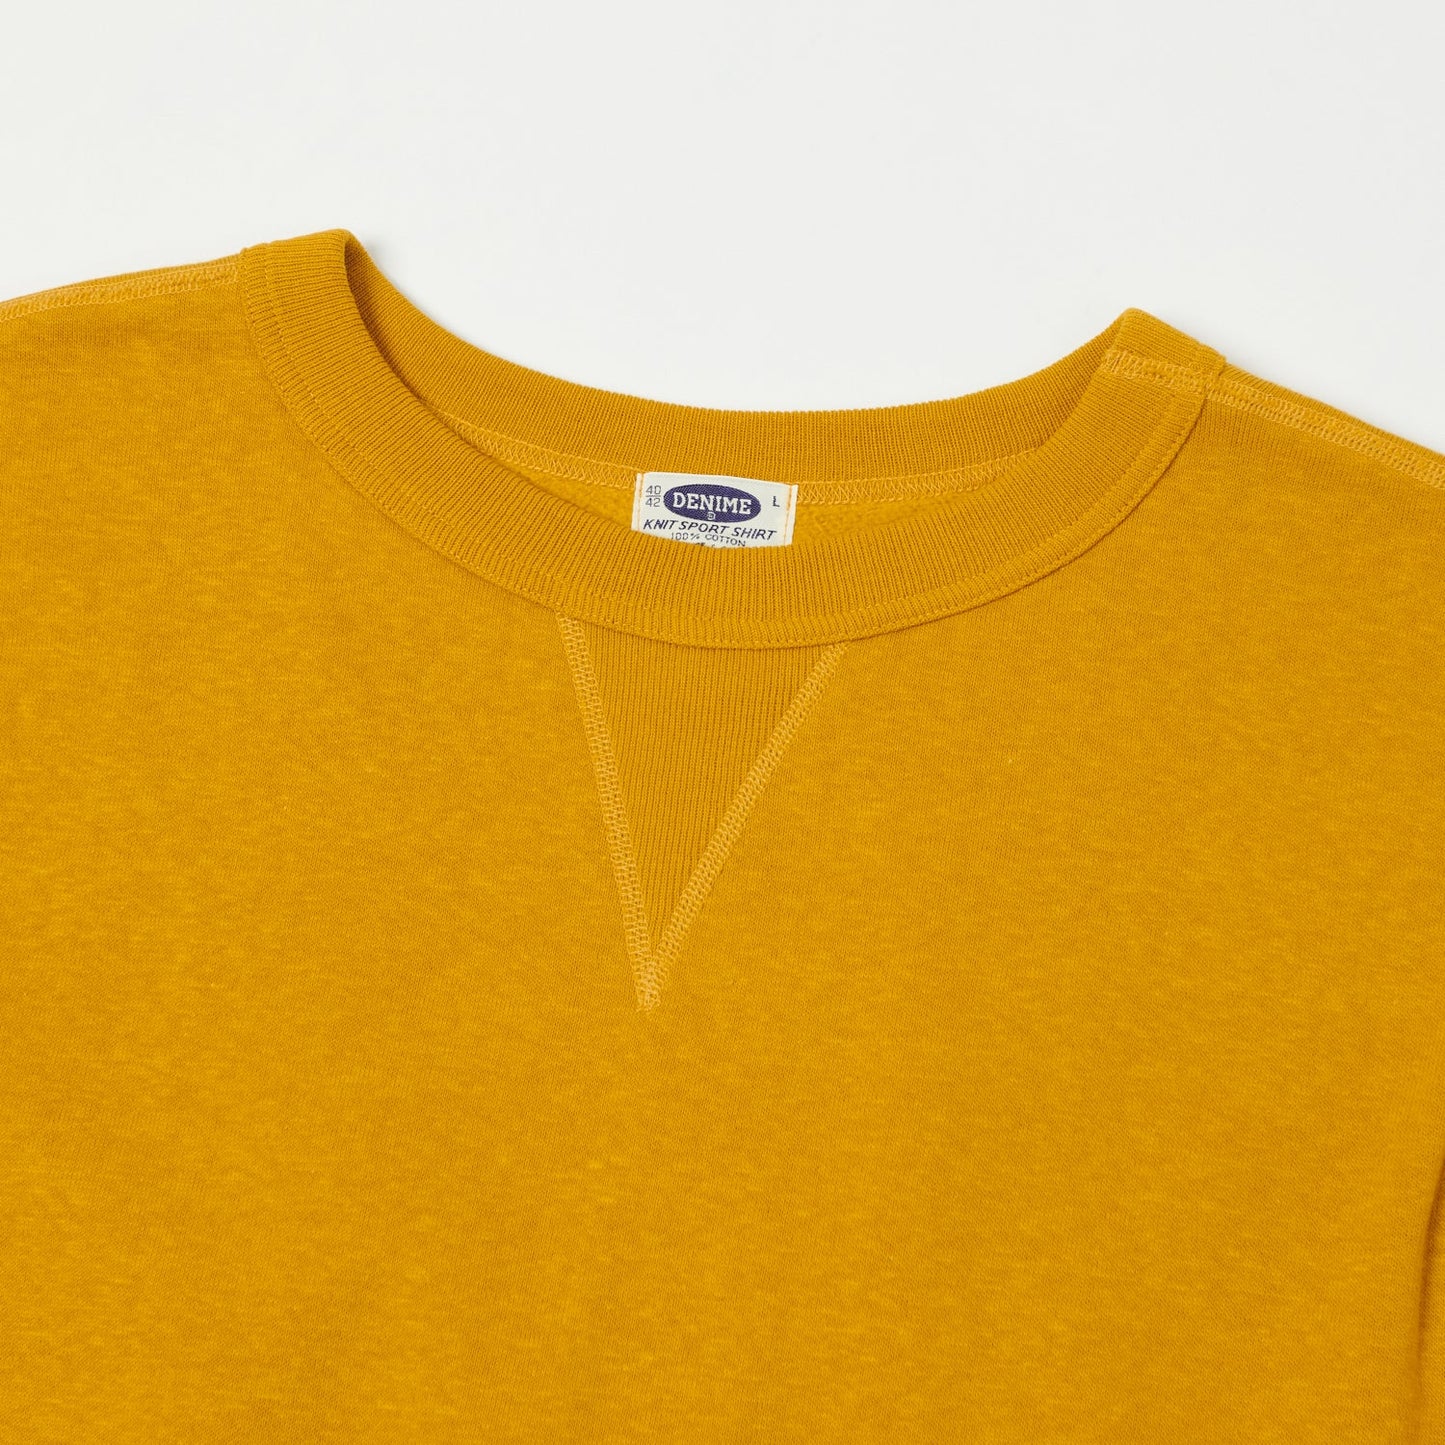 Denime - Lot 260- 4-Needle Sweatshirt Yellow